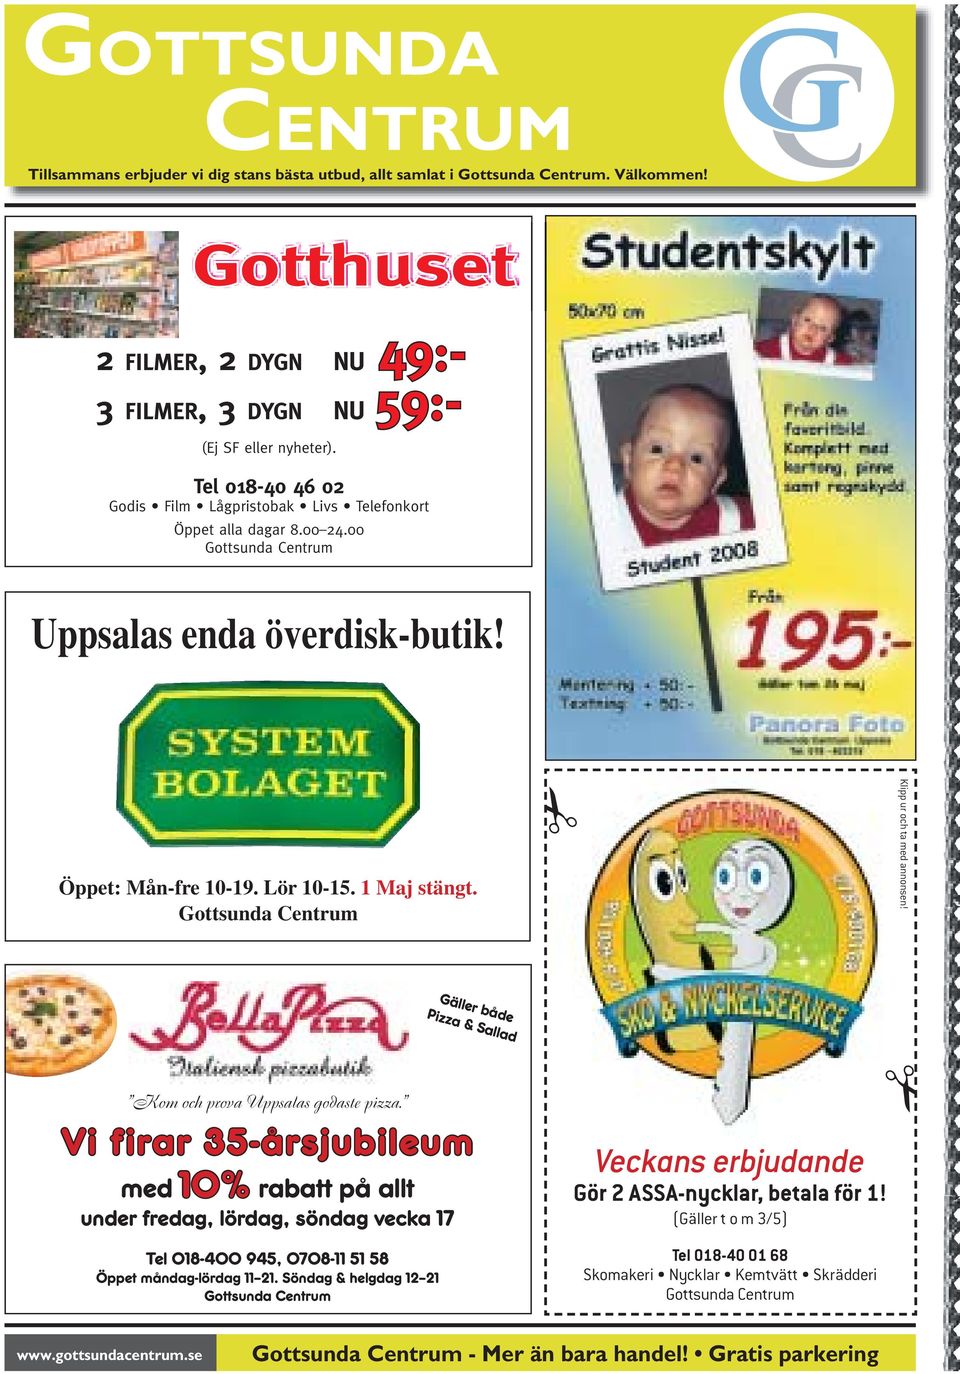 Gottsunda Centrum Klipp ur och ta med annonsen! Gäller både Pizza & Sallad Kom och prova Uppsalas godaste pizza.